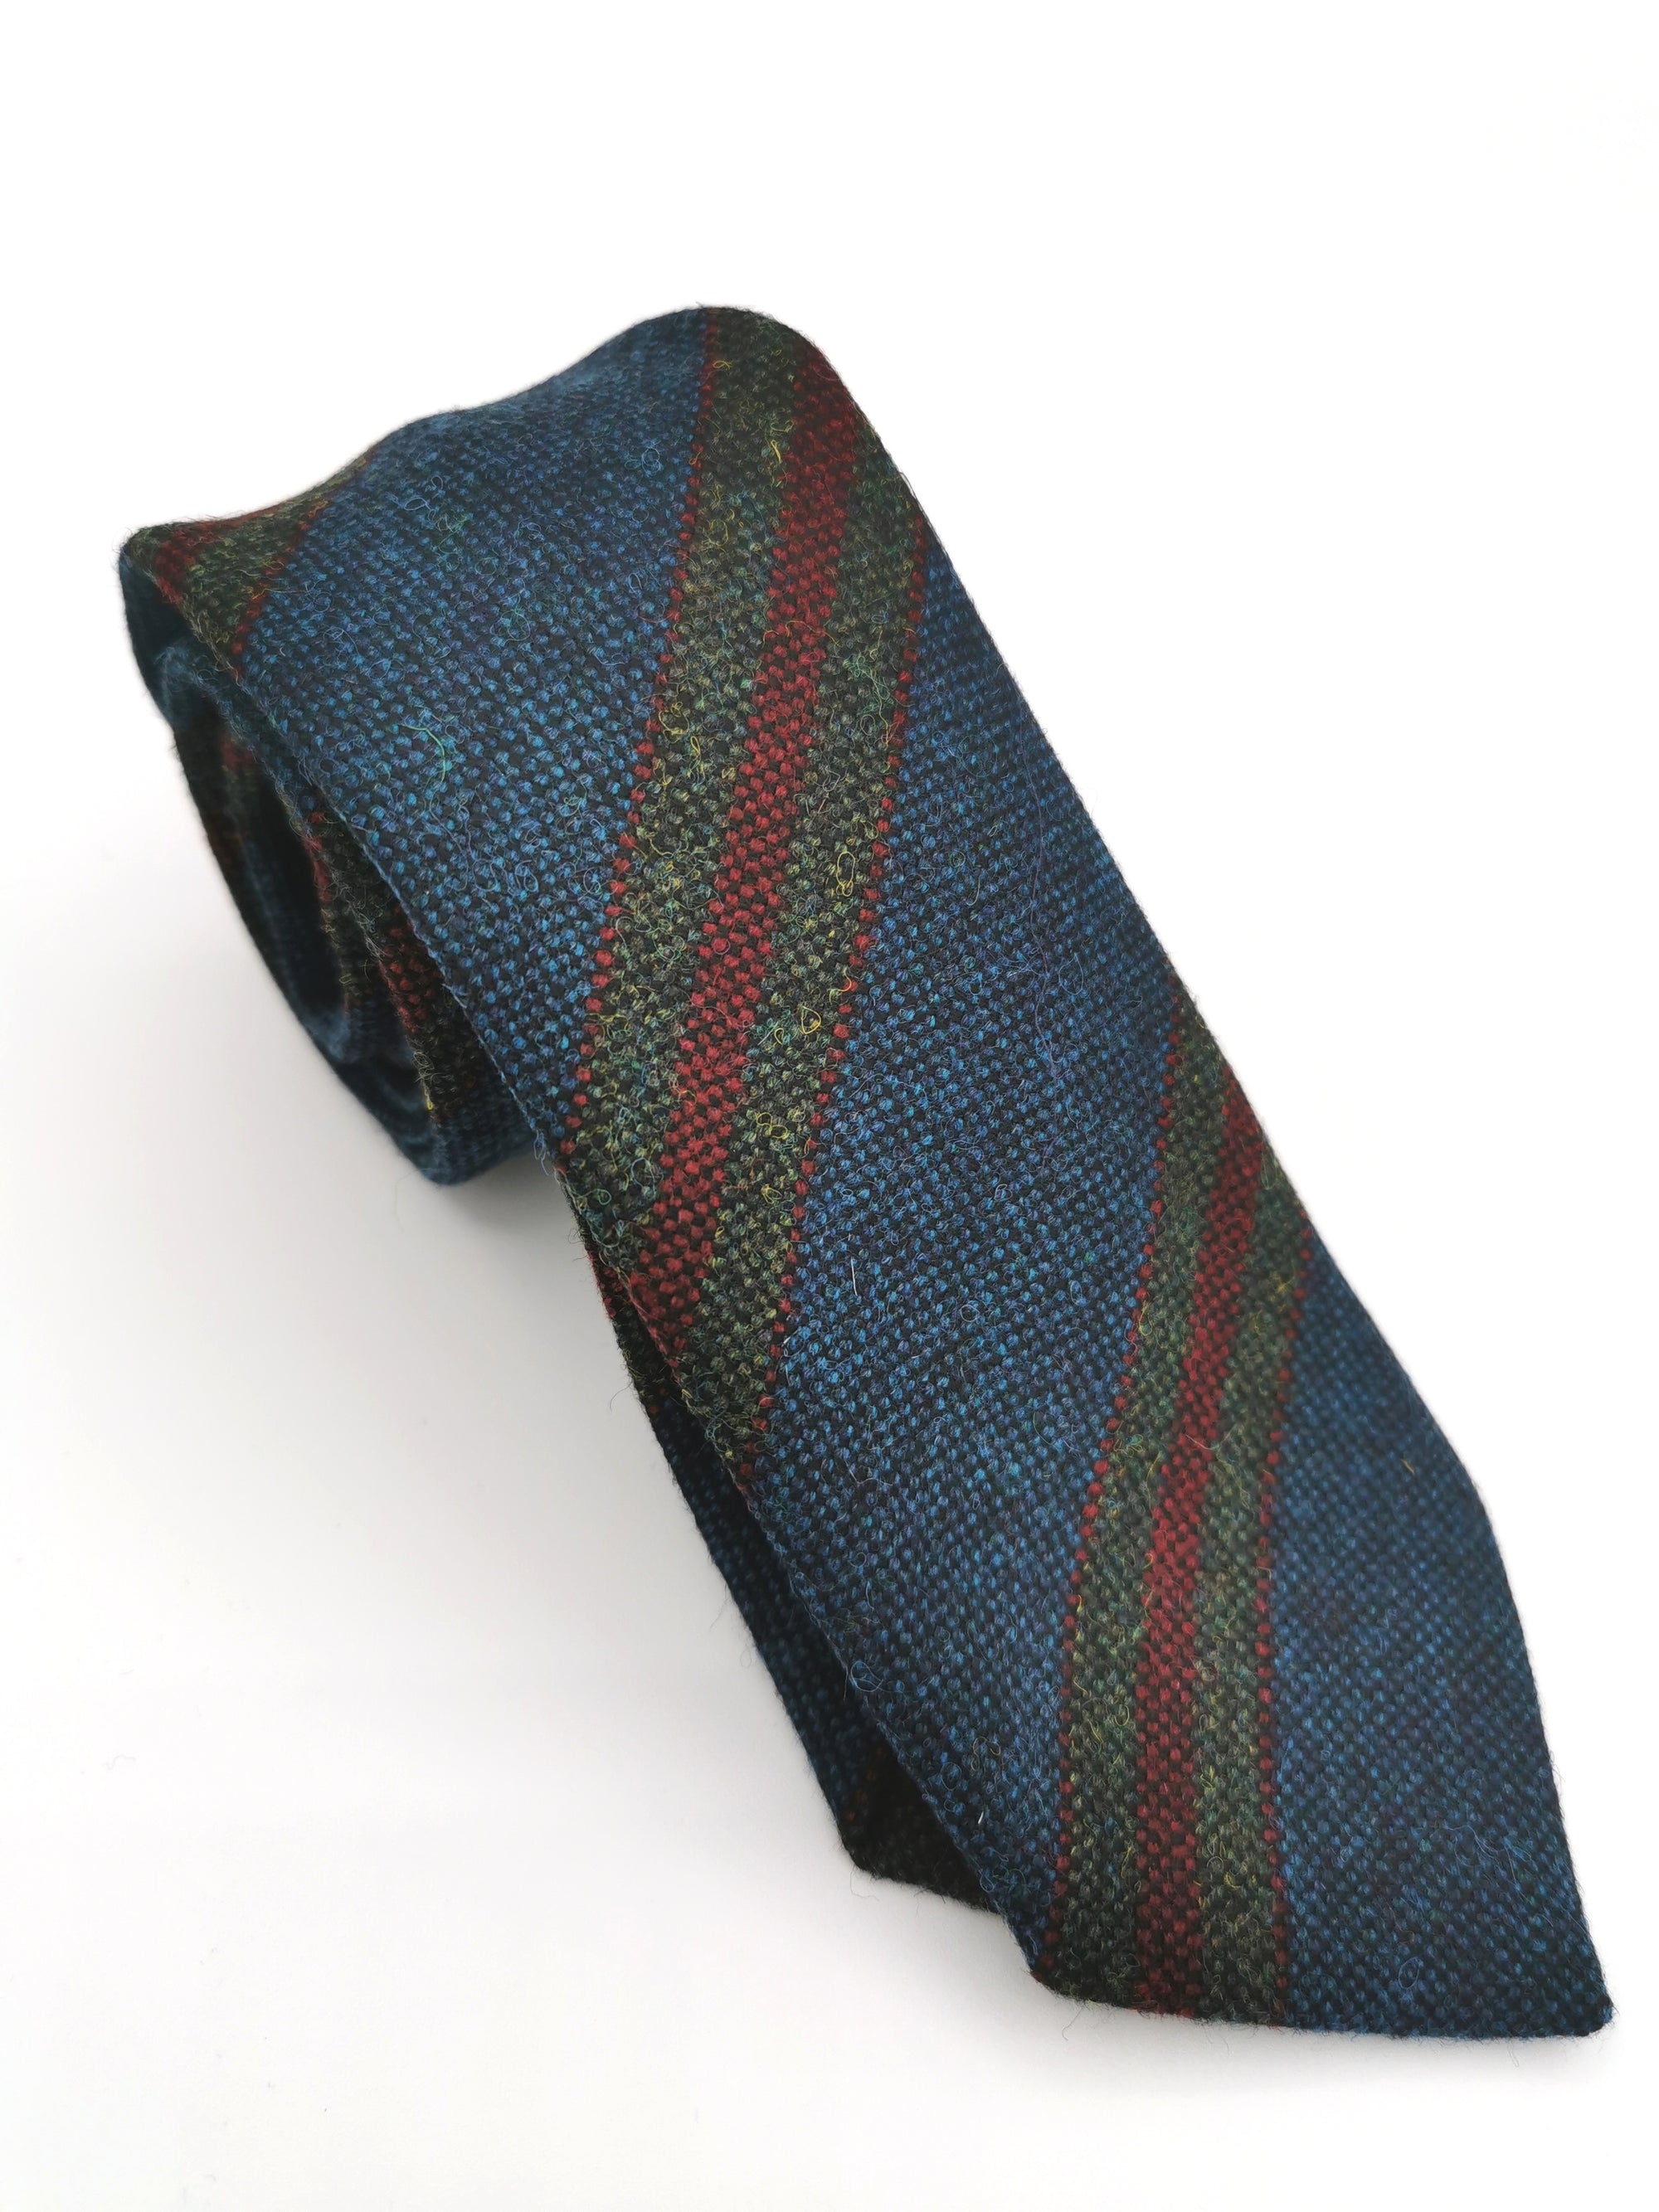 Cravate en laine Ferala bleue turquoise à rayures